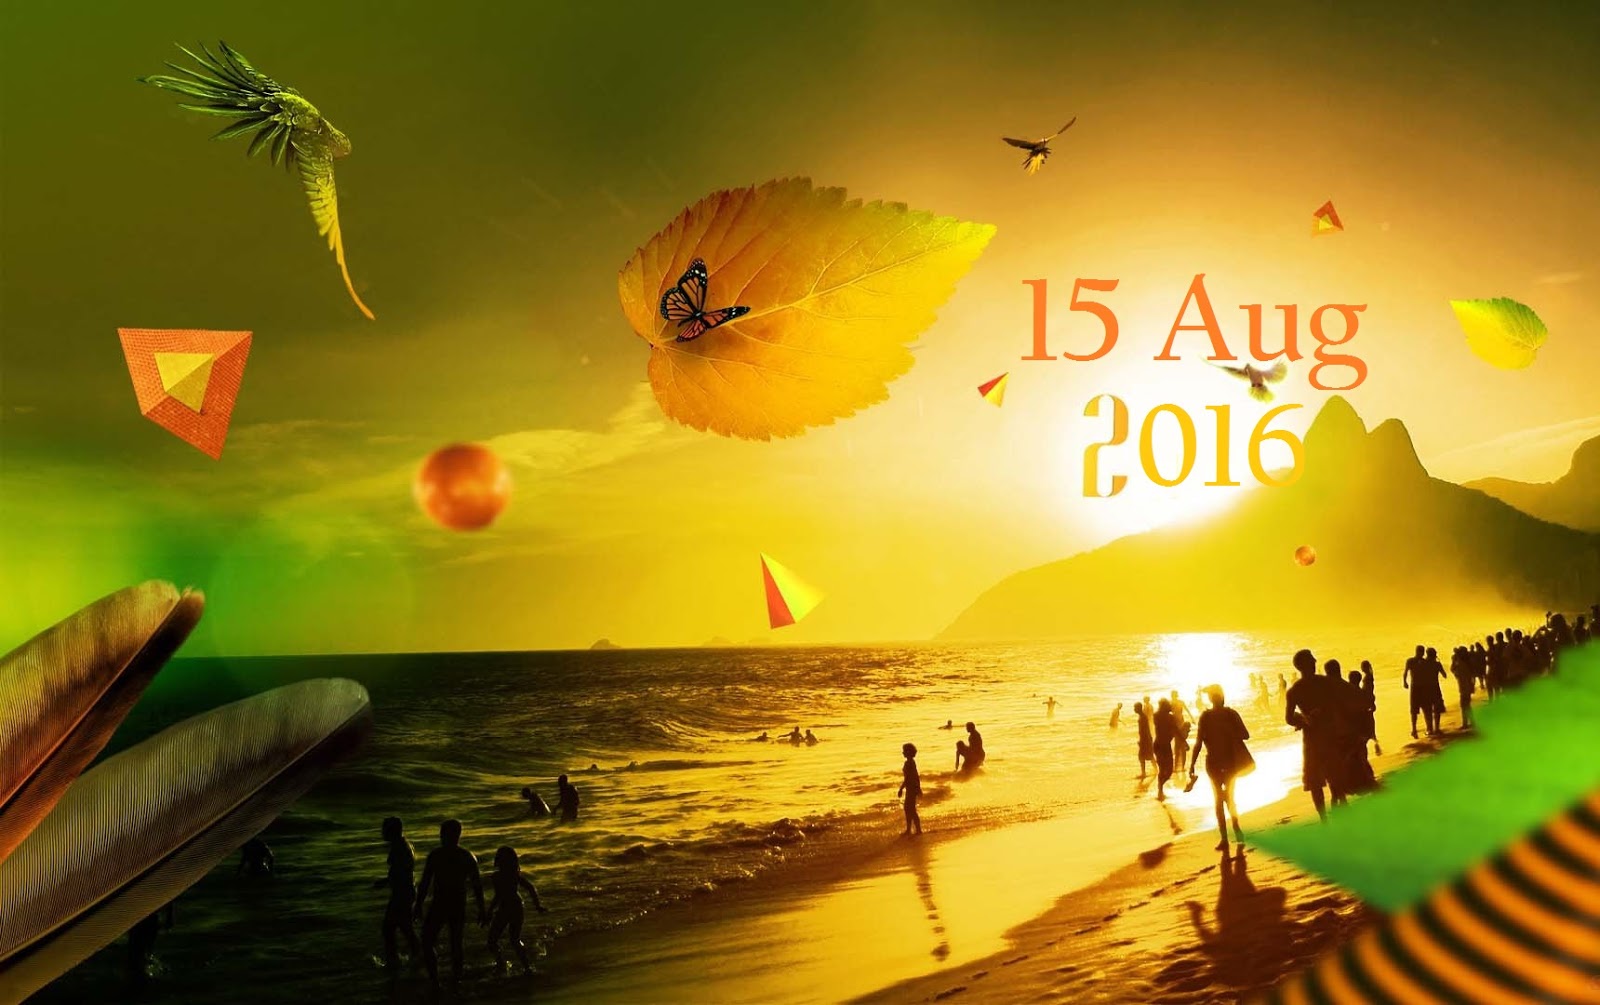 8 월 15 일 라이브 배경 화면,노랑,하늘,수평선,여름,폰트